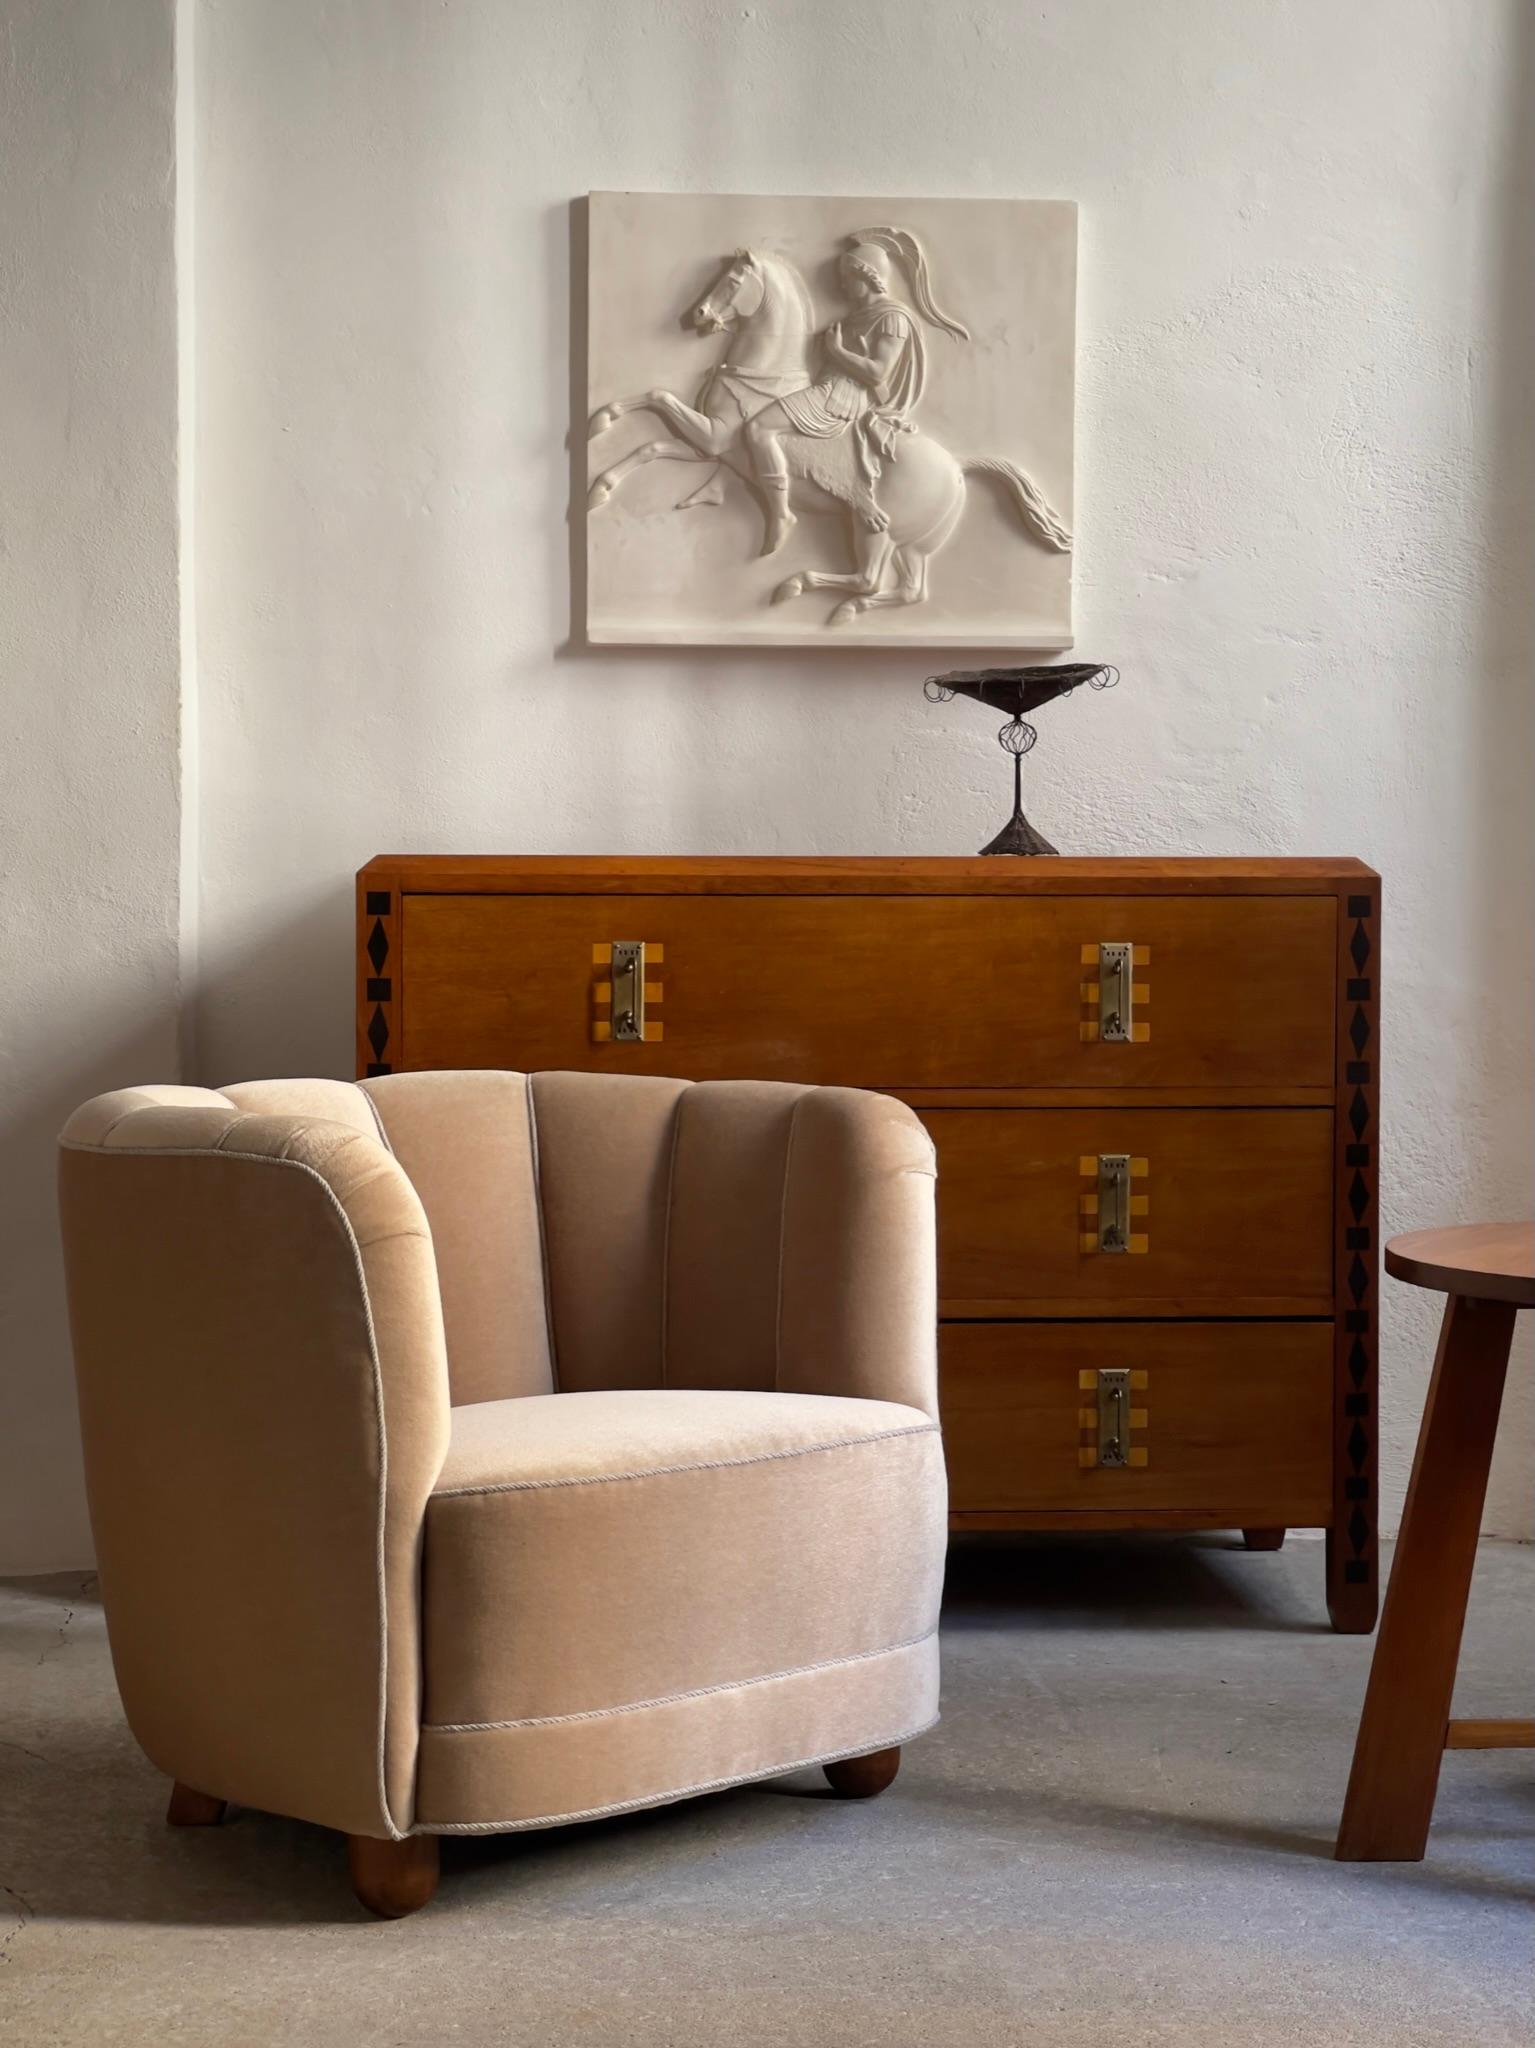 Dänischer moderner Sessel aus den 1930er Jahren, neu gepolstert mit edlem beigem Mohair und nussbraun gebeizten Buchenbeinen. 

Ein sehr elegantes Stück, ausgeführt von einem erfahrenen dänischen Tischler, mit harmonischen Proportionen und einem